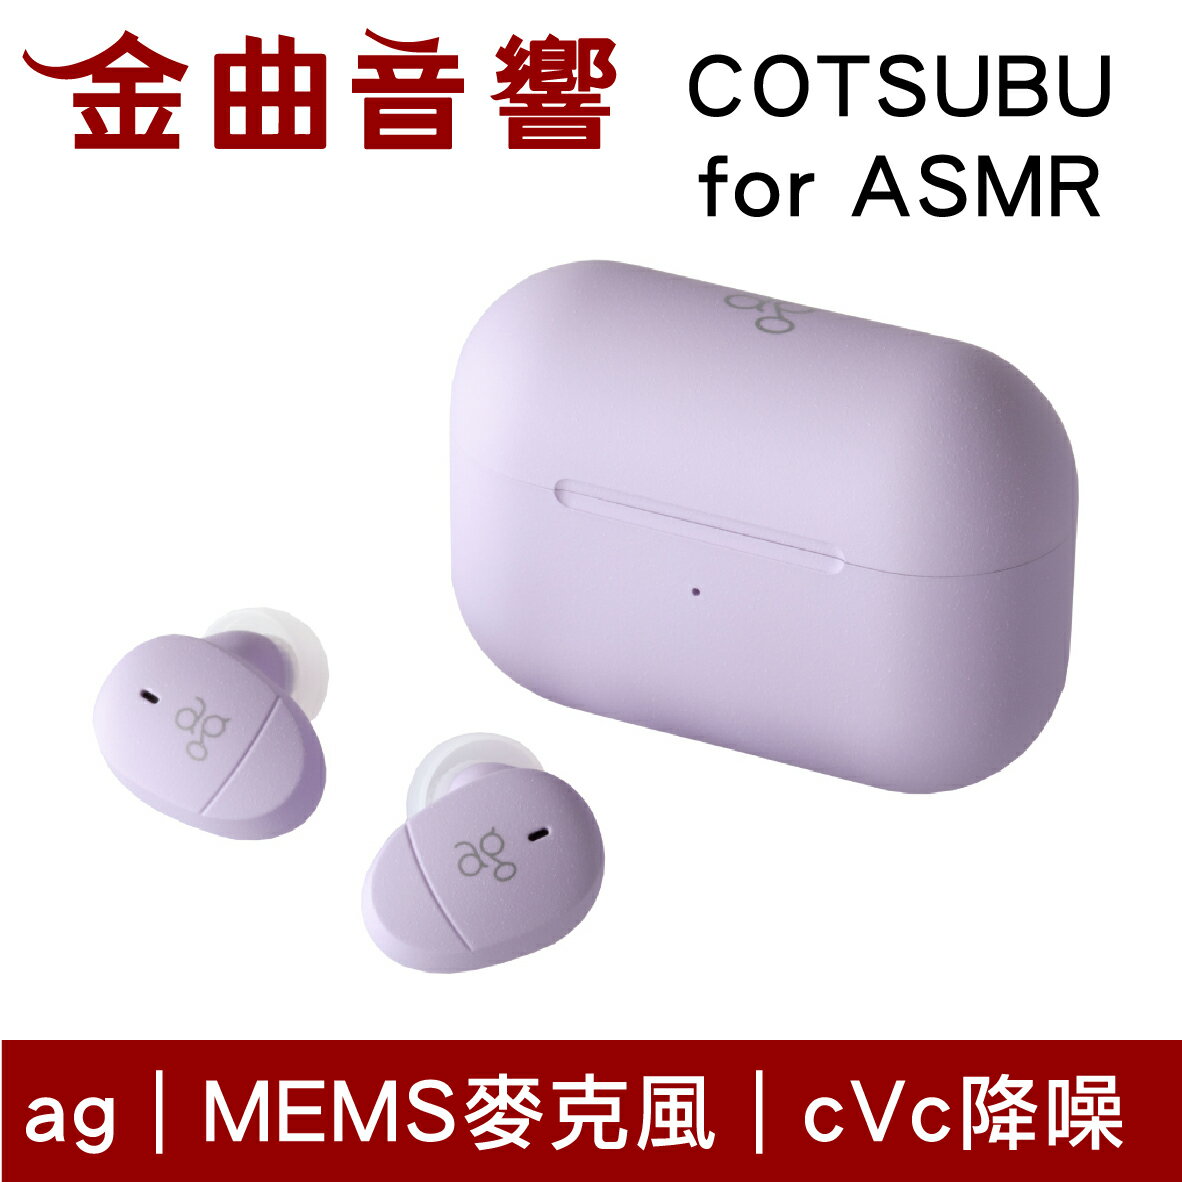 final 子品牌ag COTSUBU for ASMR IPX4 cVc降噪真無線藍牙耳機| 金曲